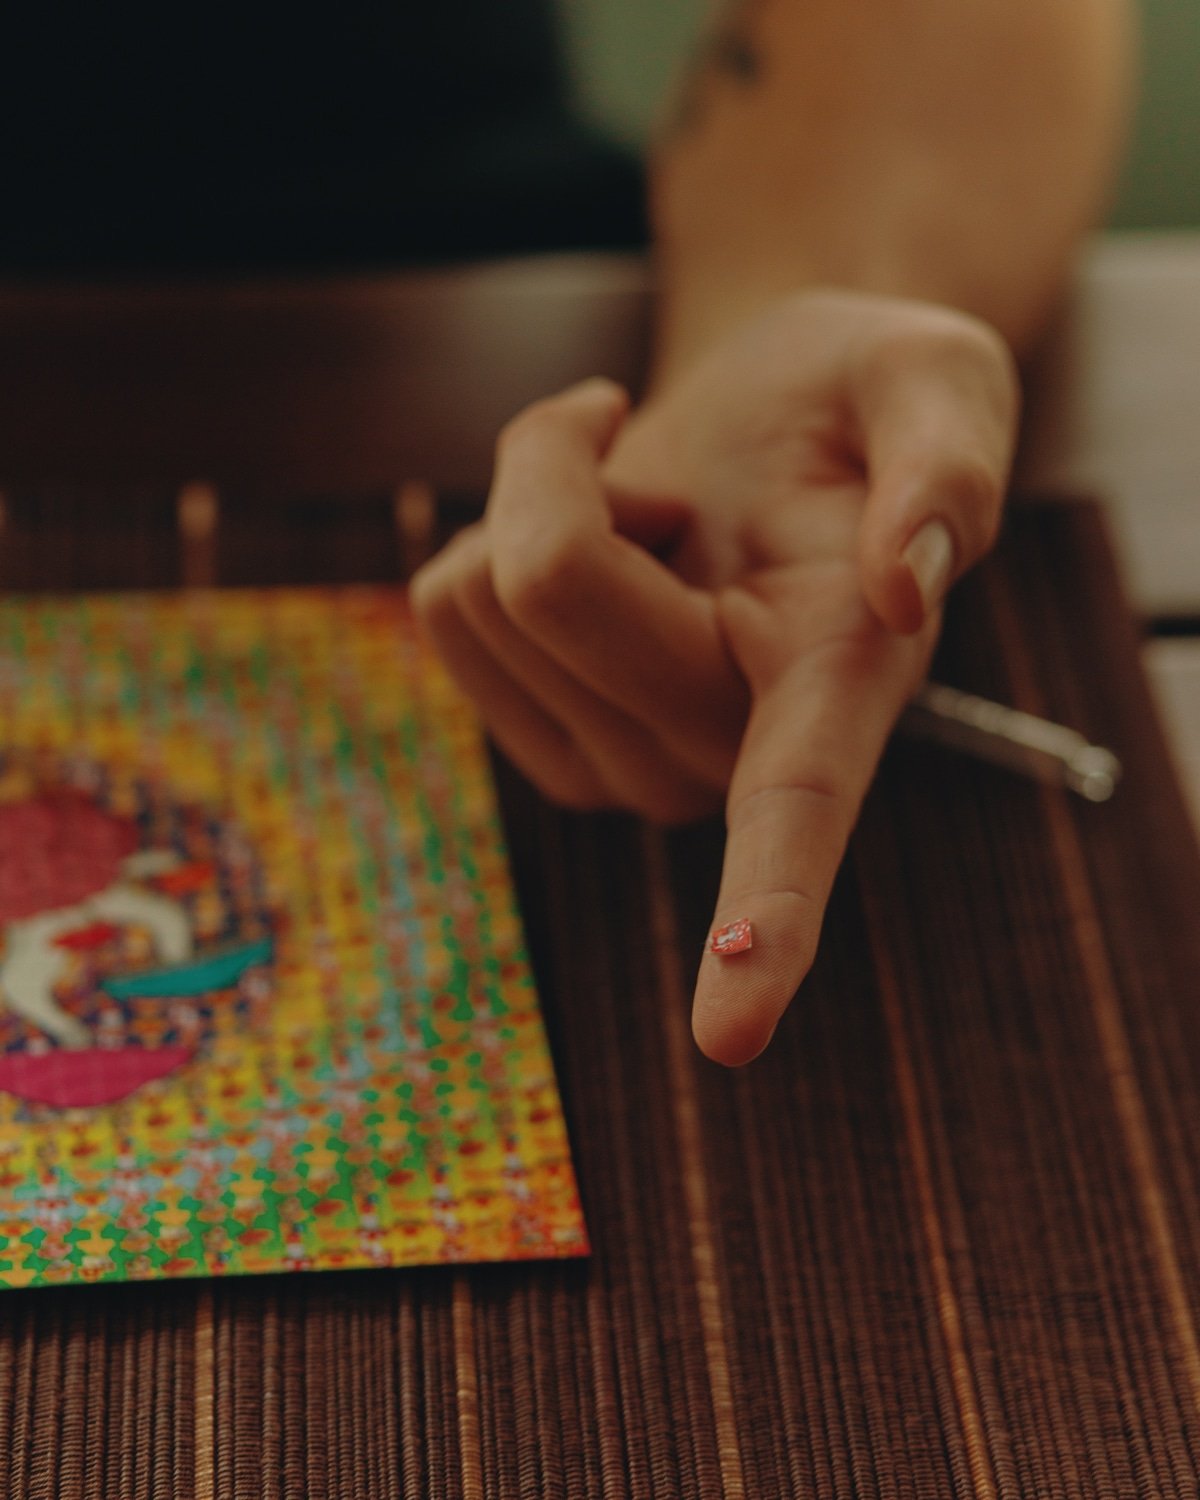 LSD tab on finger